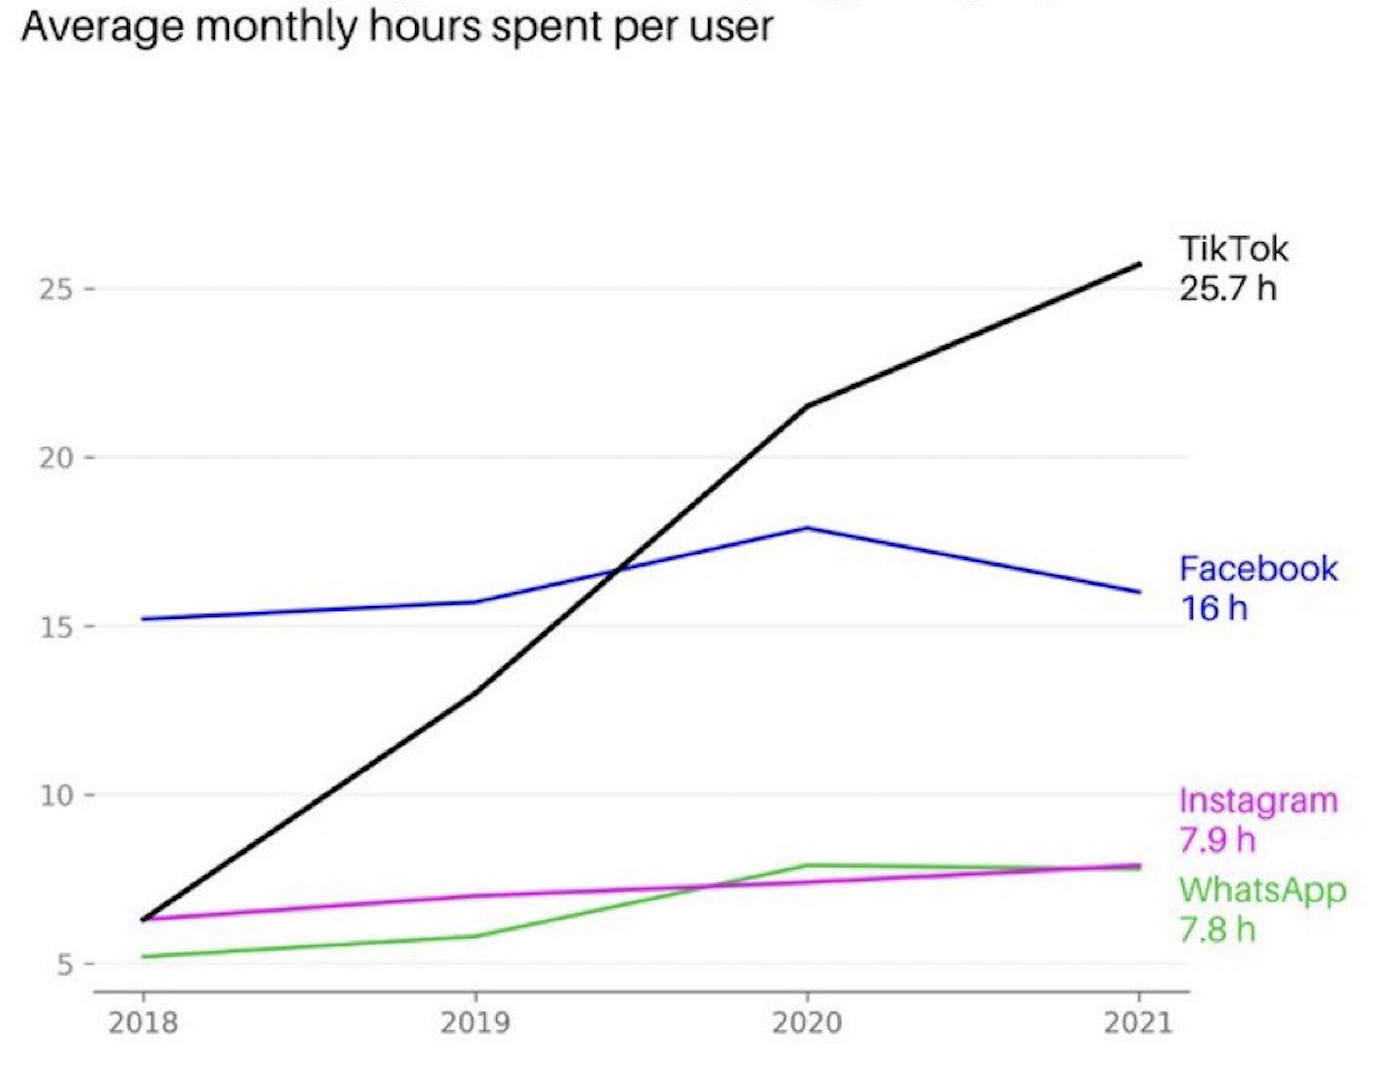 Average monthly hours spent on social media platforms, like TikTok